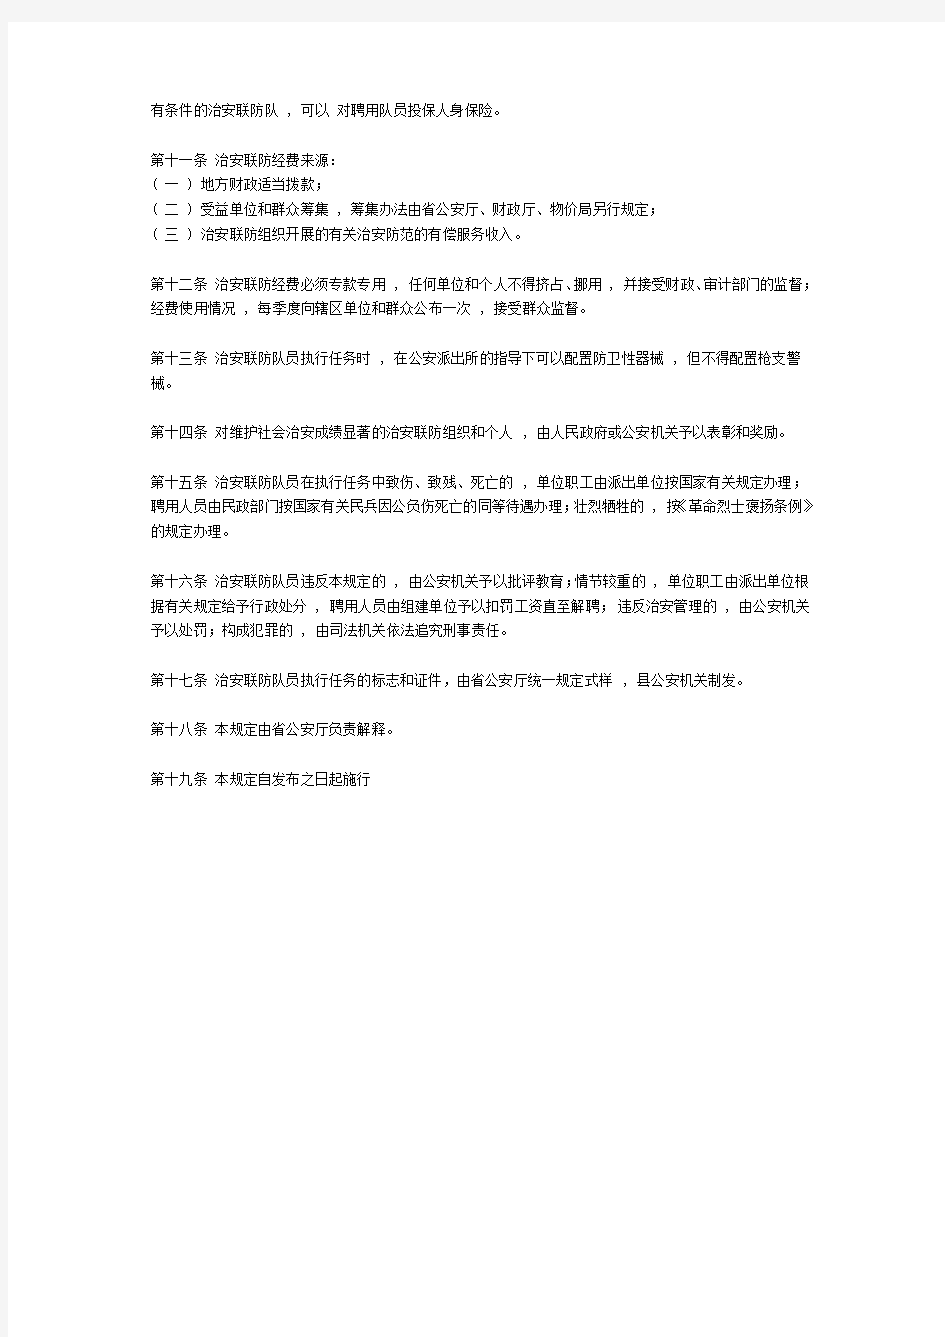 贵州省事业单位工作人员考核暂行办法黔人通2001 132号